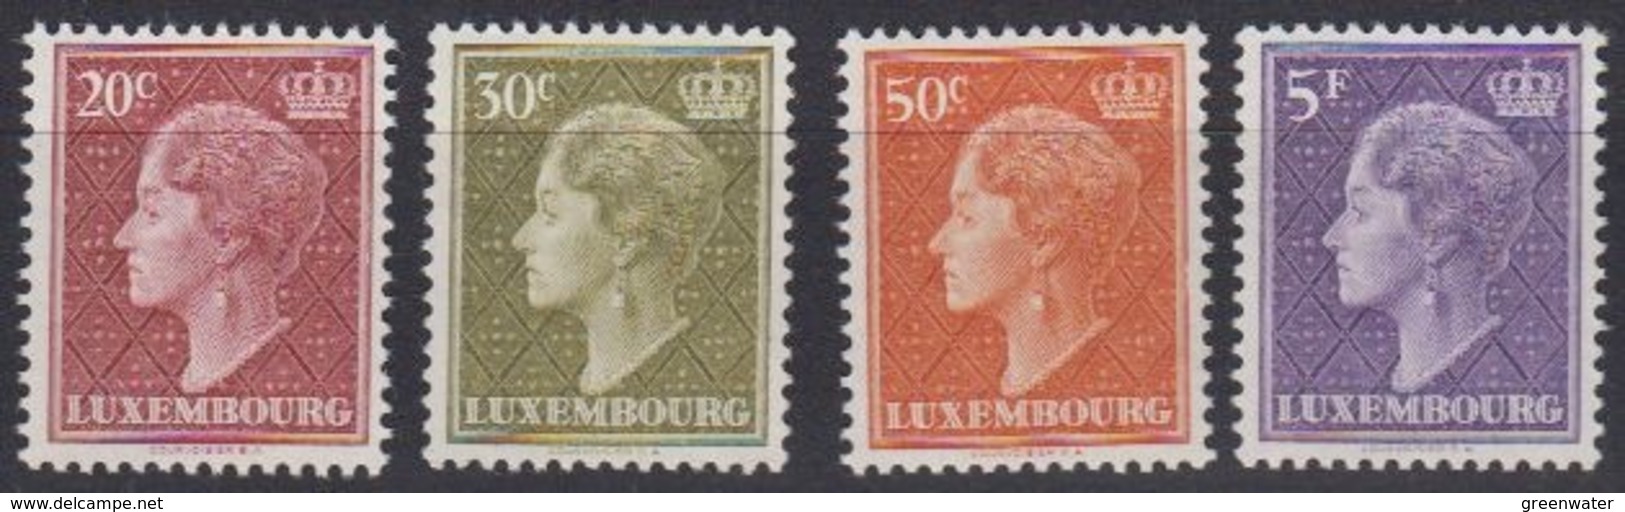 Luxemburg 1958 Definitives / Grossherzogin Charlotte 4v ** Mnh (44455) - Ongebruikt